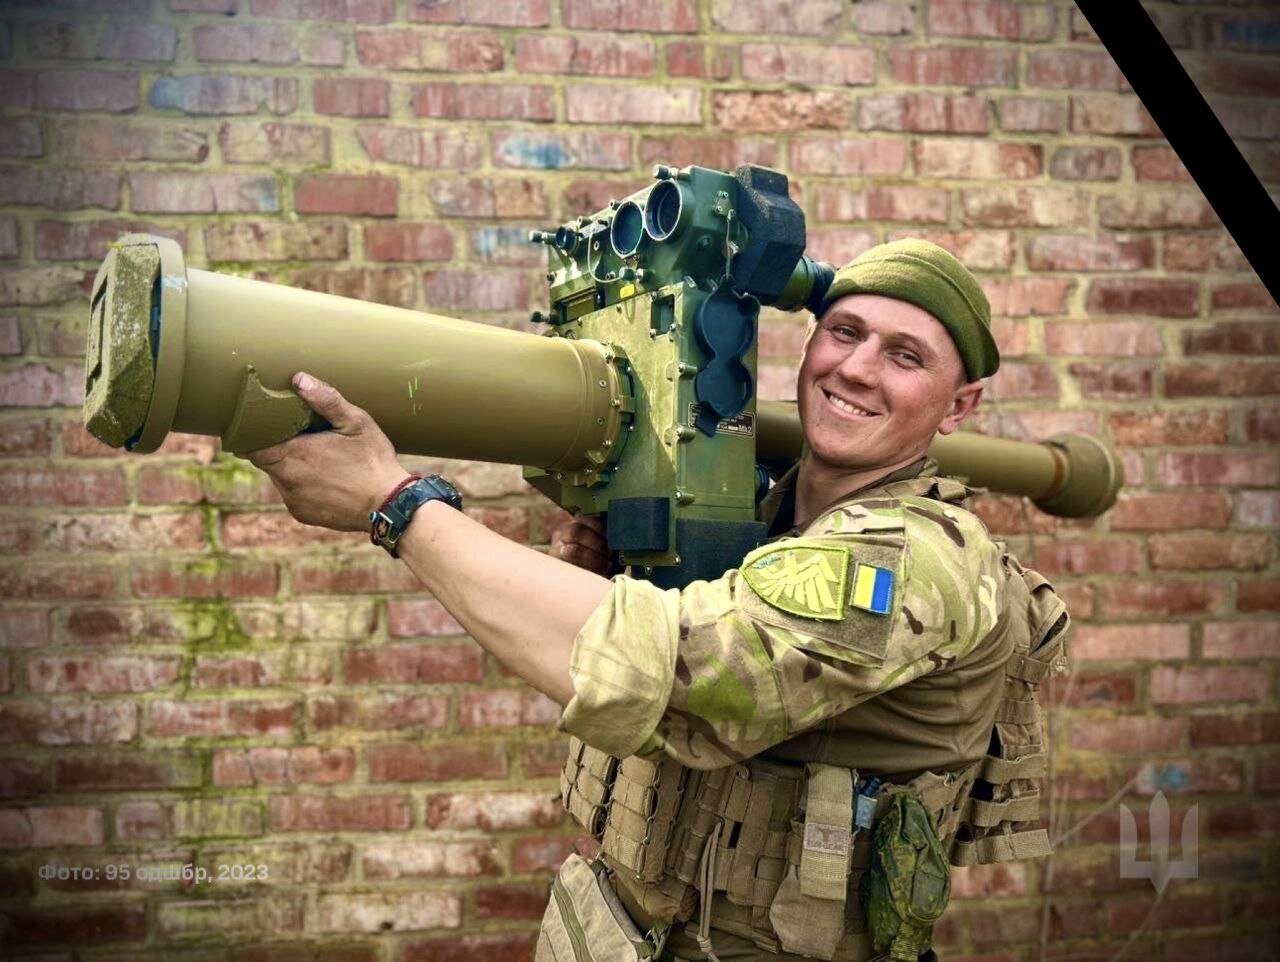 یک سلاح عجیب روی دوش سرباز اوکراینی